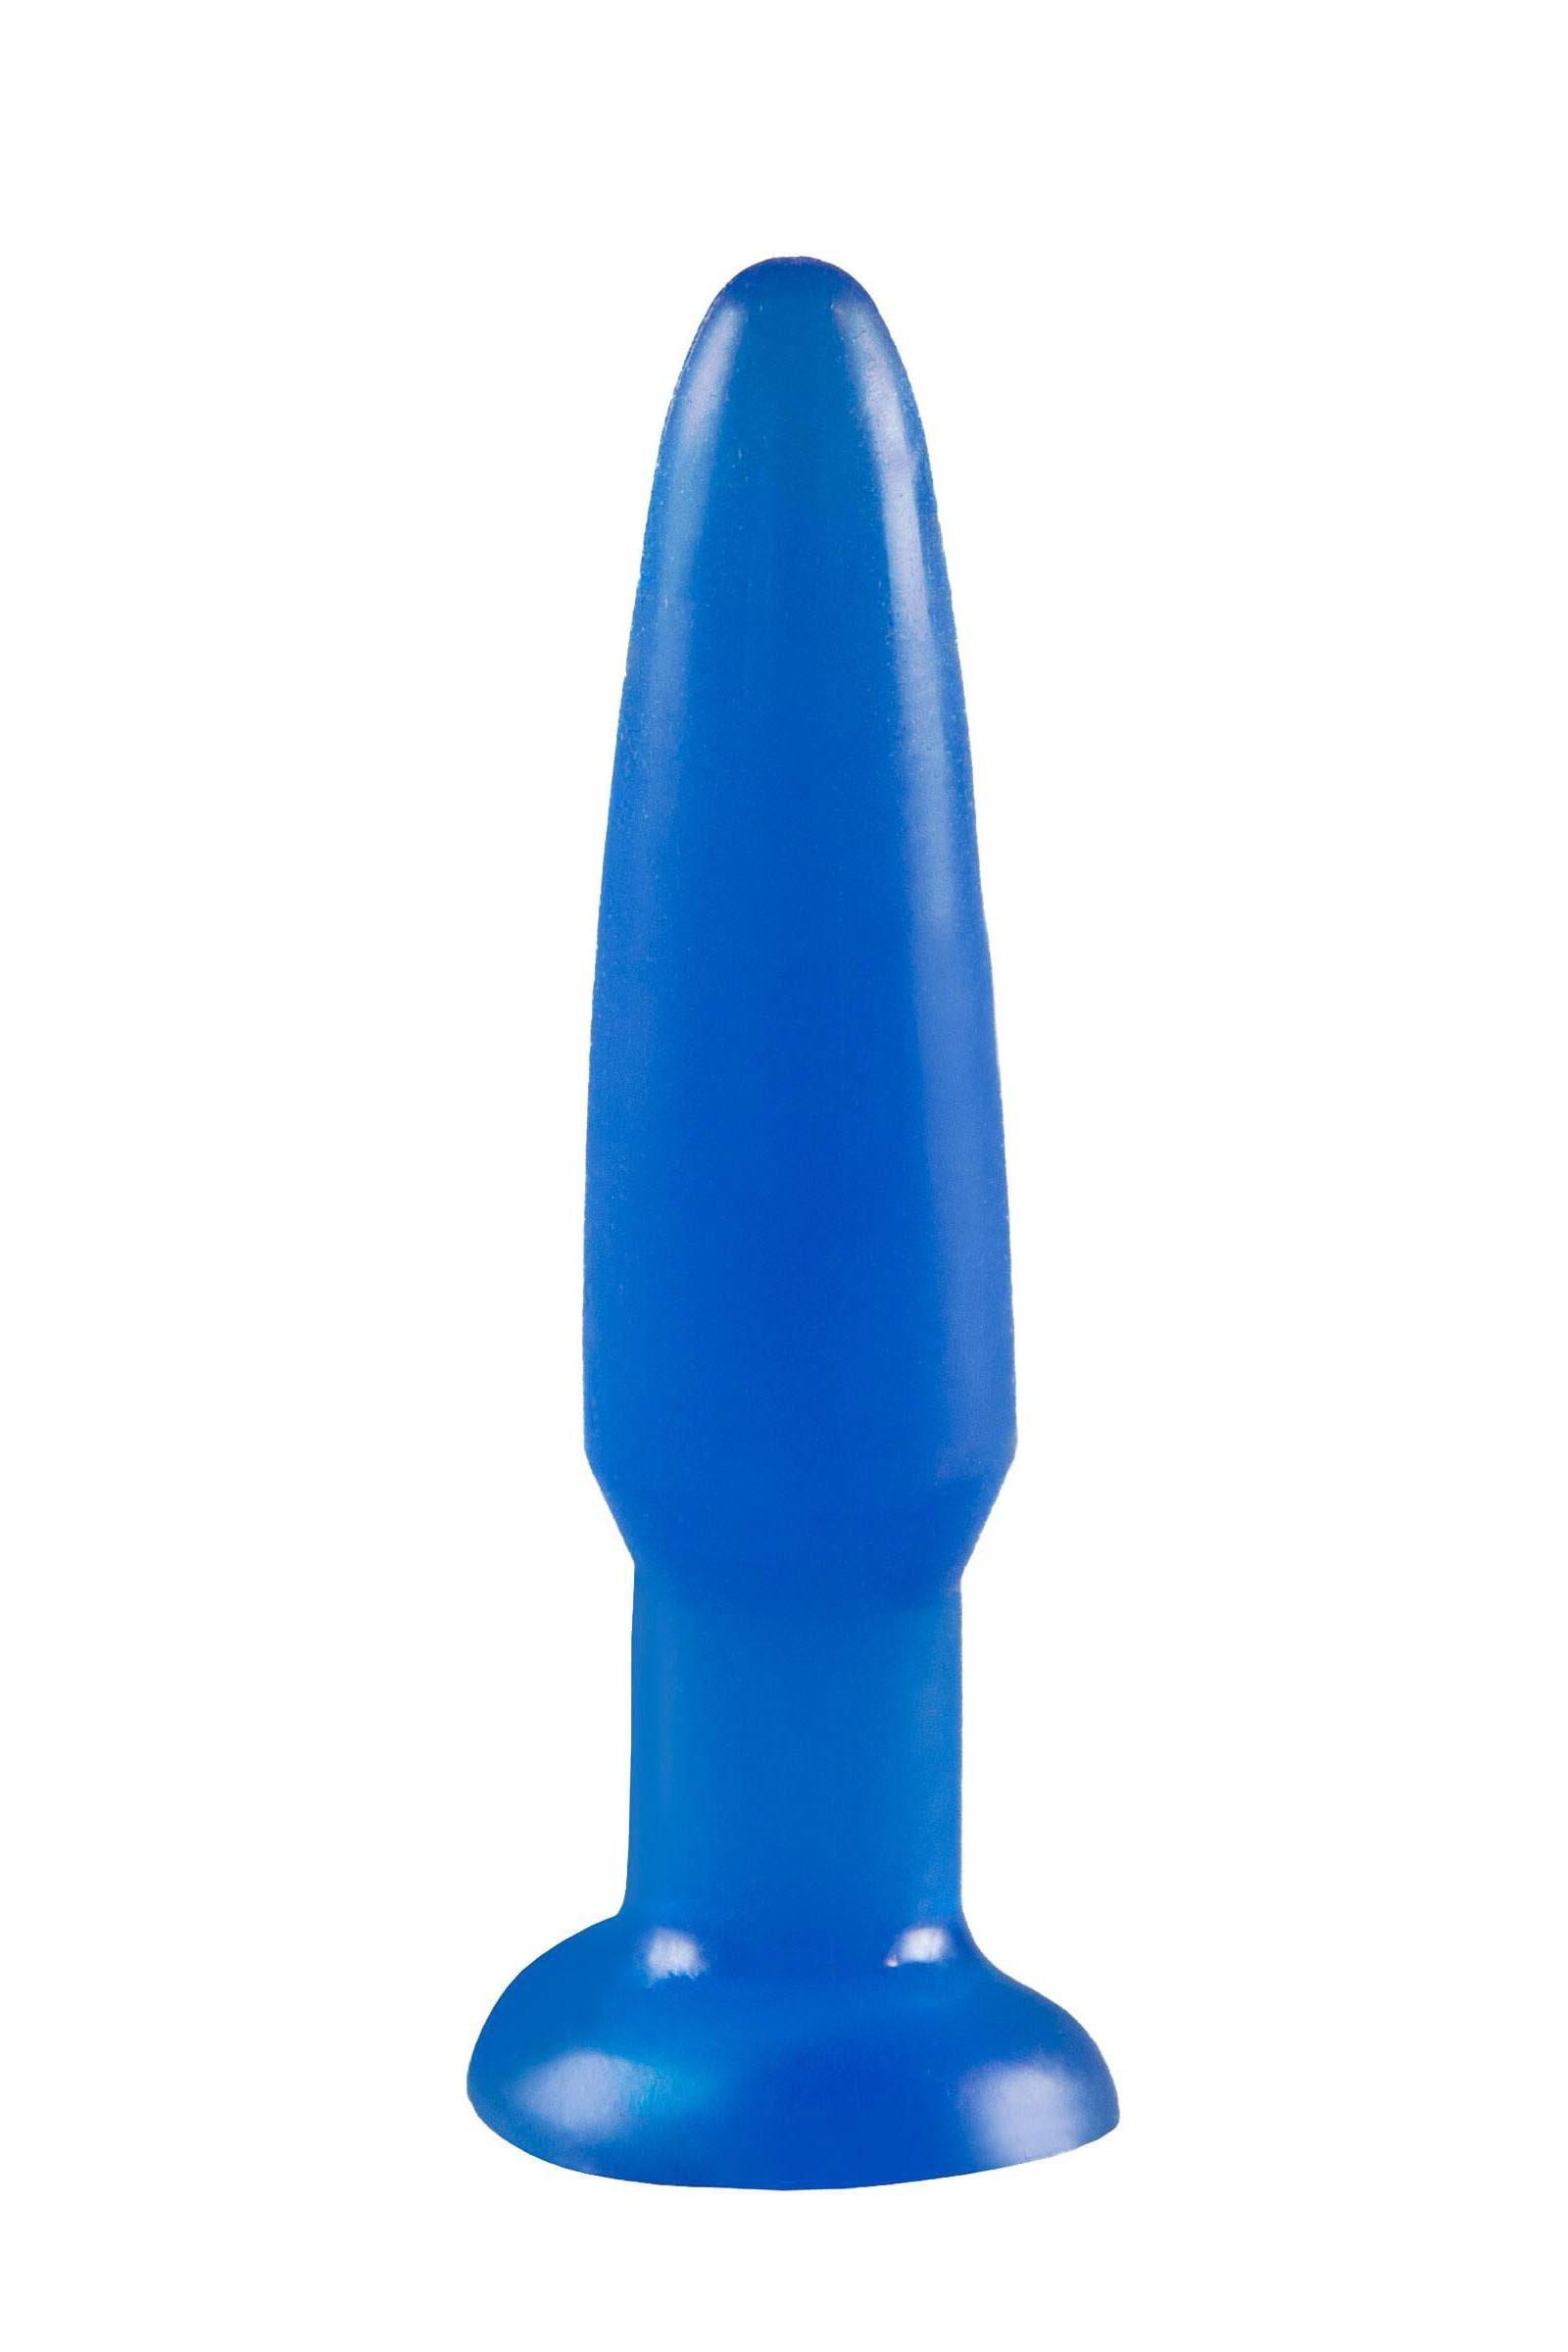 booty blue beginner's butt plug